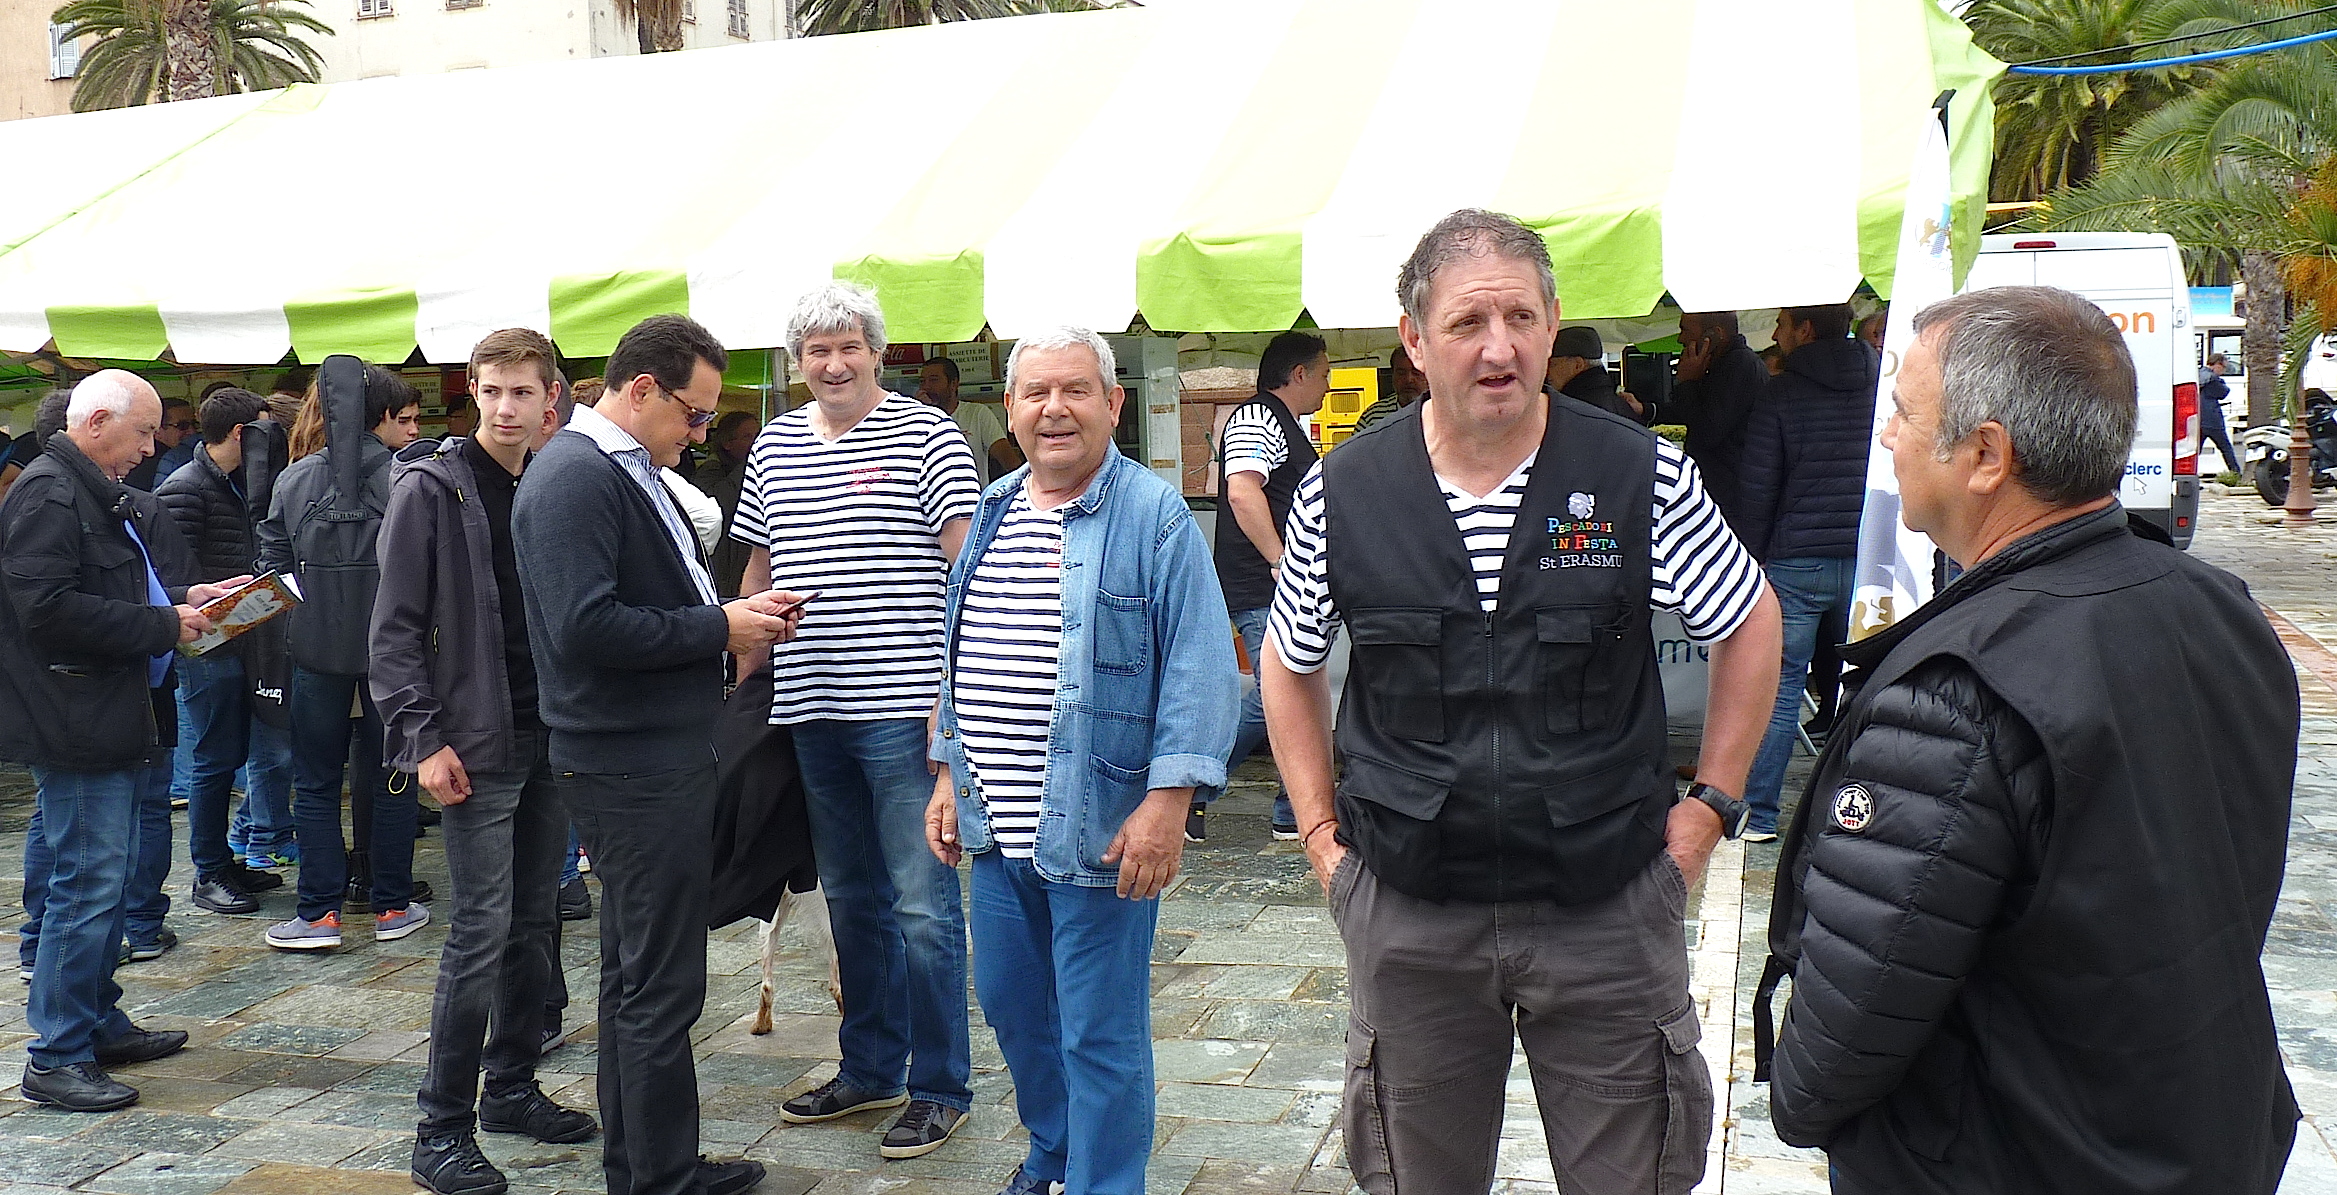 Pescadori in Festa in Aiacciu  : Le "final" samedi soir